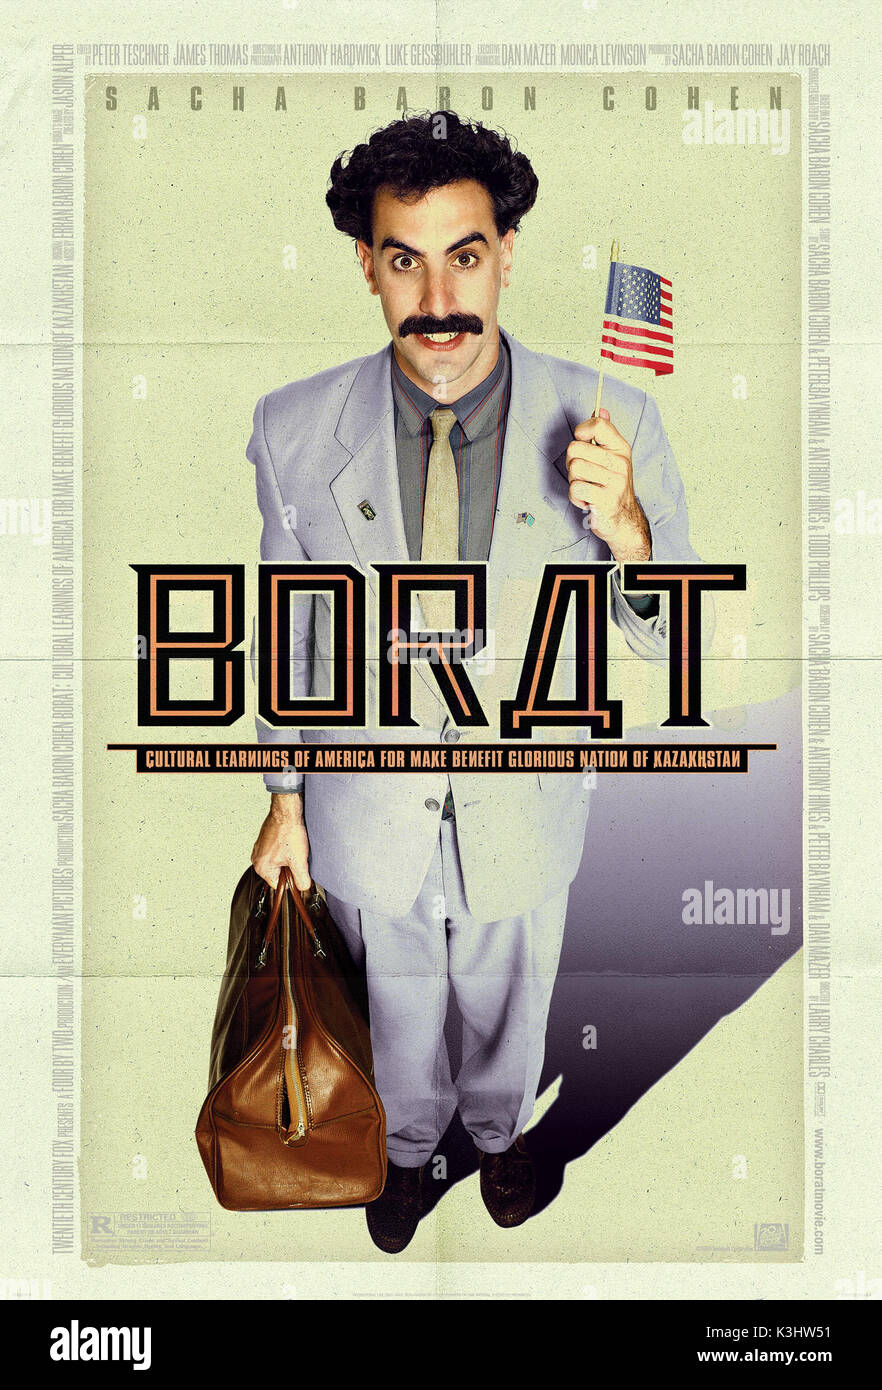 BORAT: apprendimenti culturali DI AMERICA PER FARE beneficio gloriosa Nazione del Kazakistan sacha baron cohen come Borat data: 2006 Foto Stock